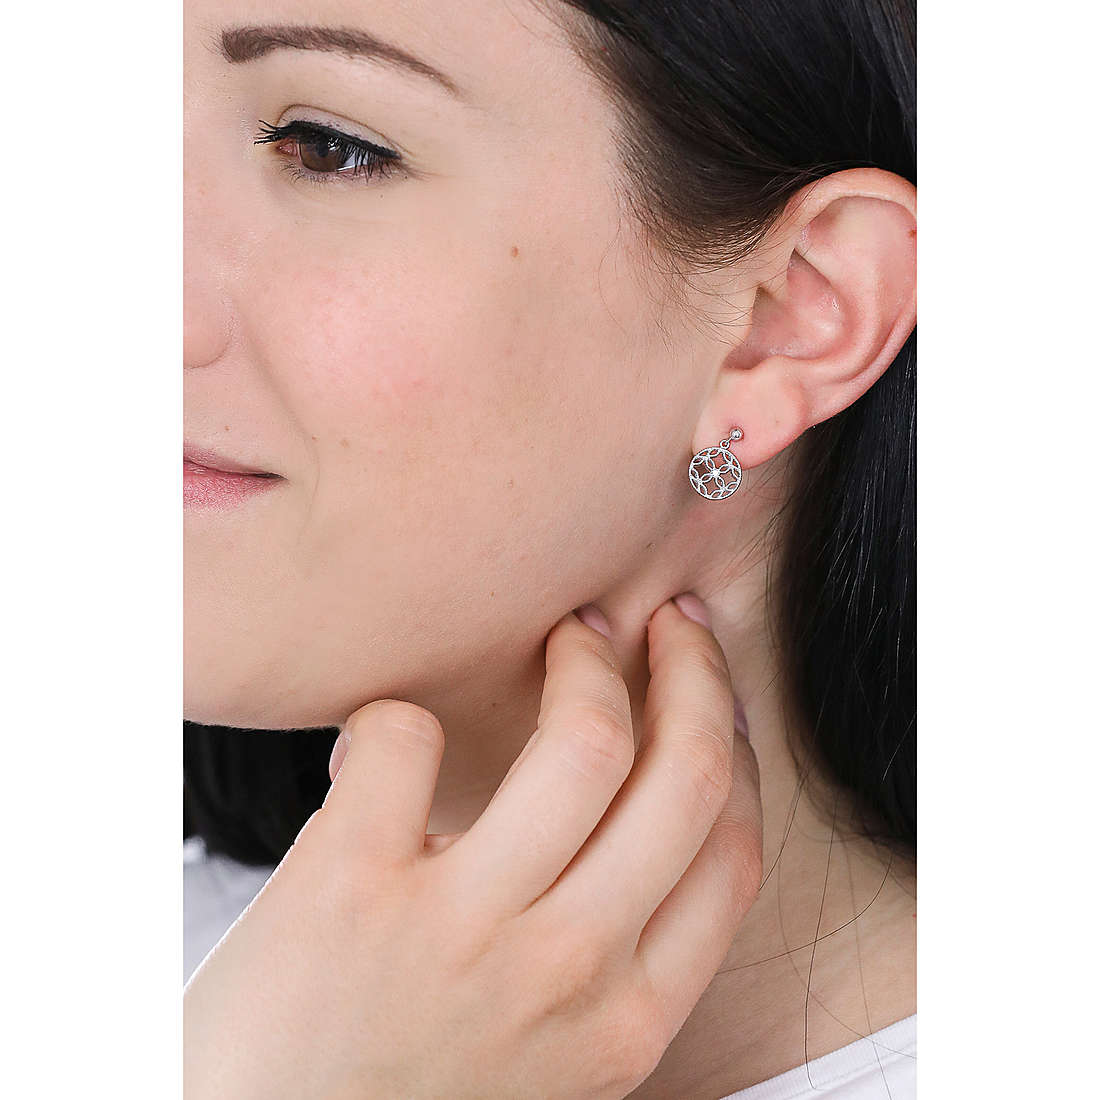 Fossil earrings Sterling Silver woman JFS00524040 wearing